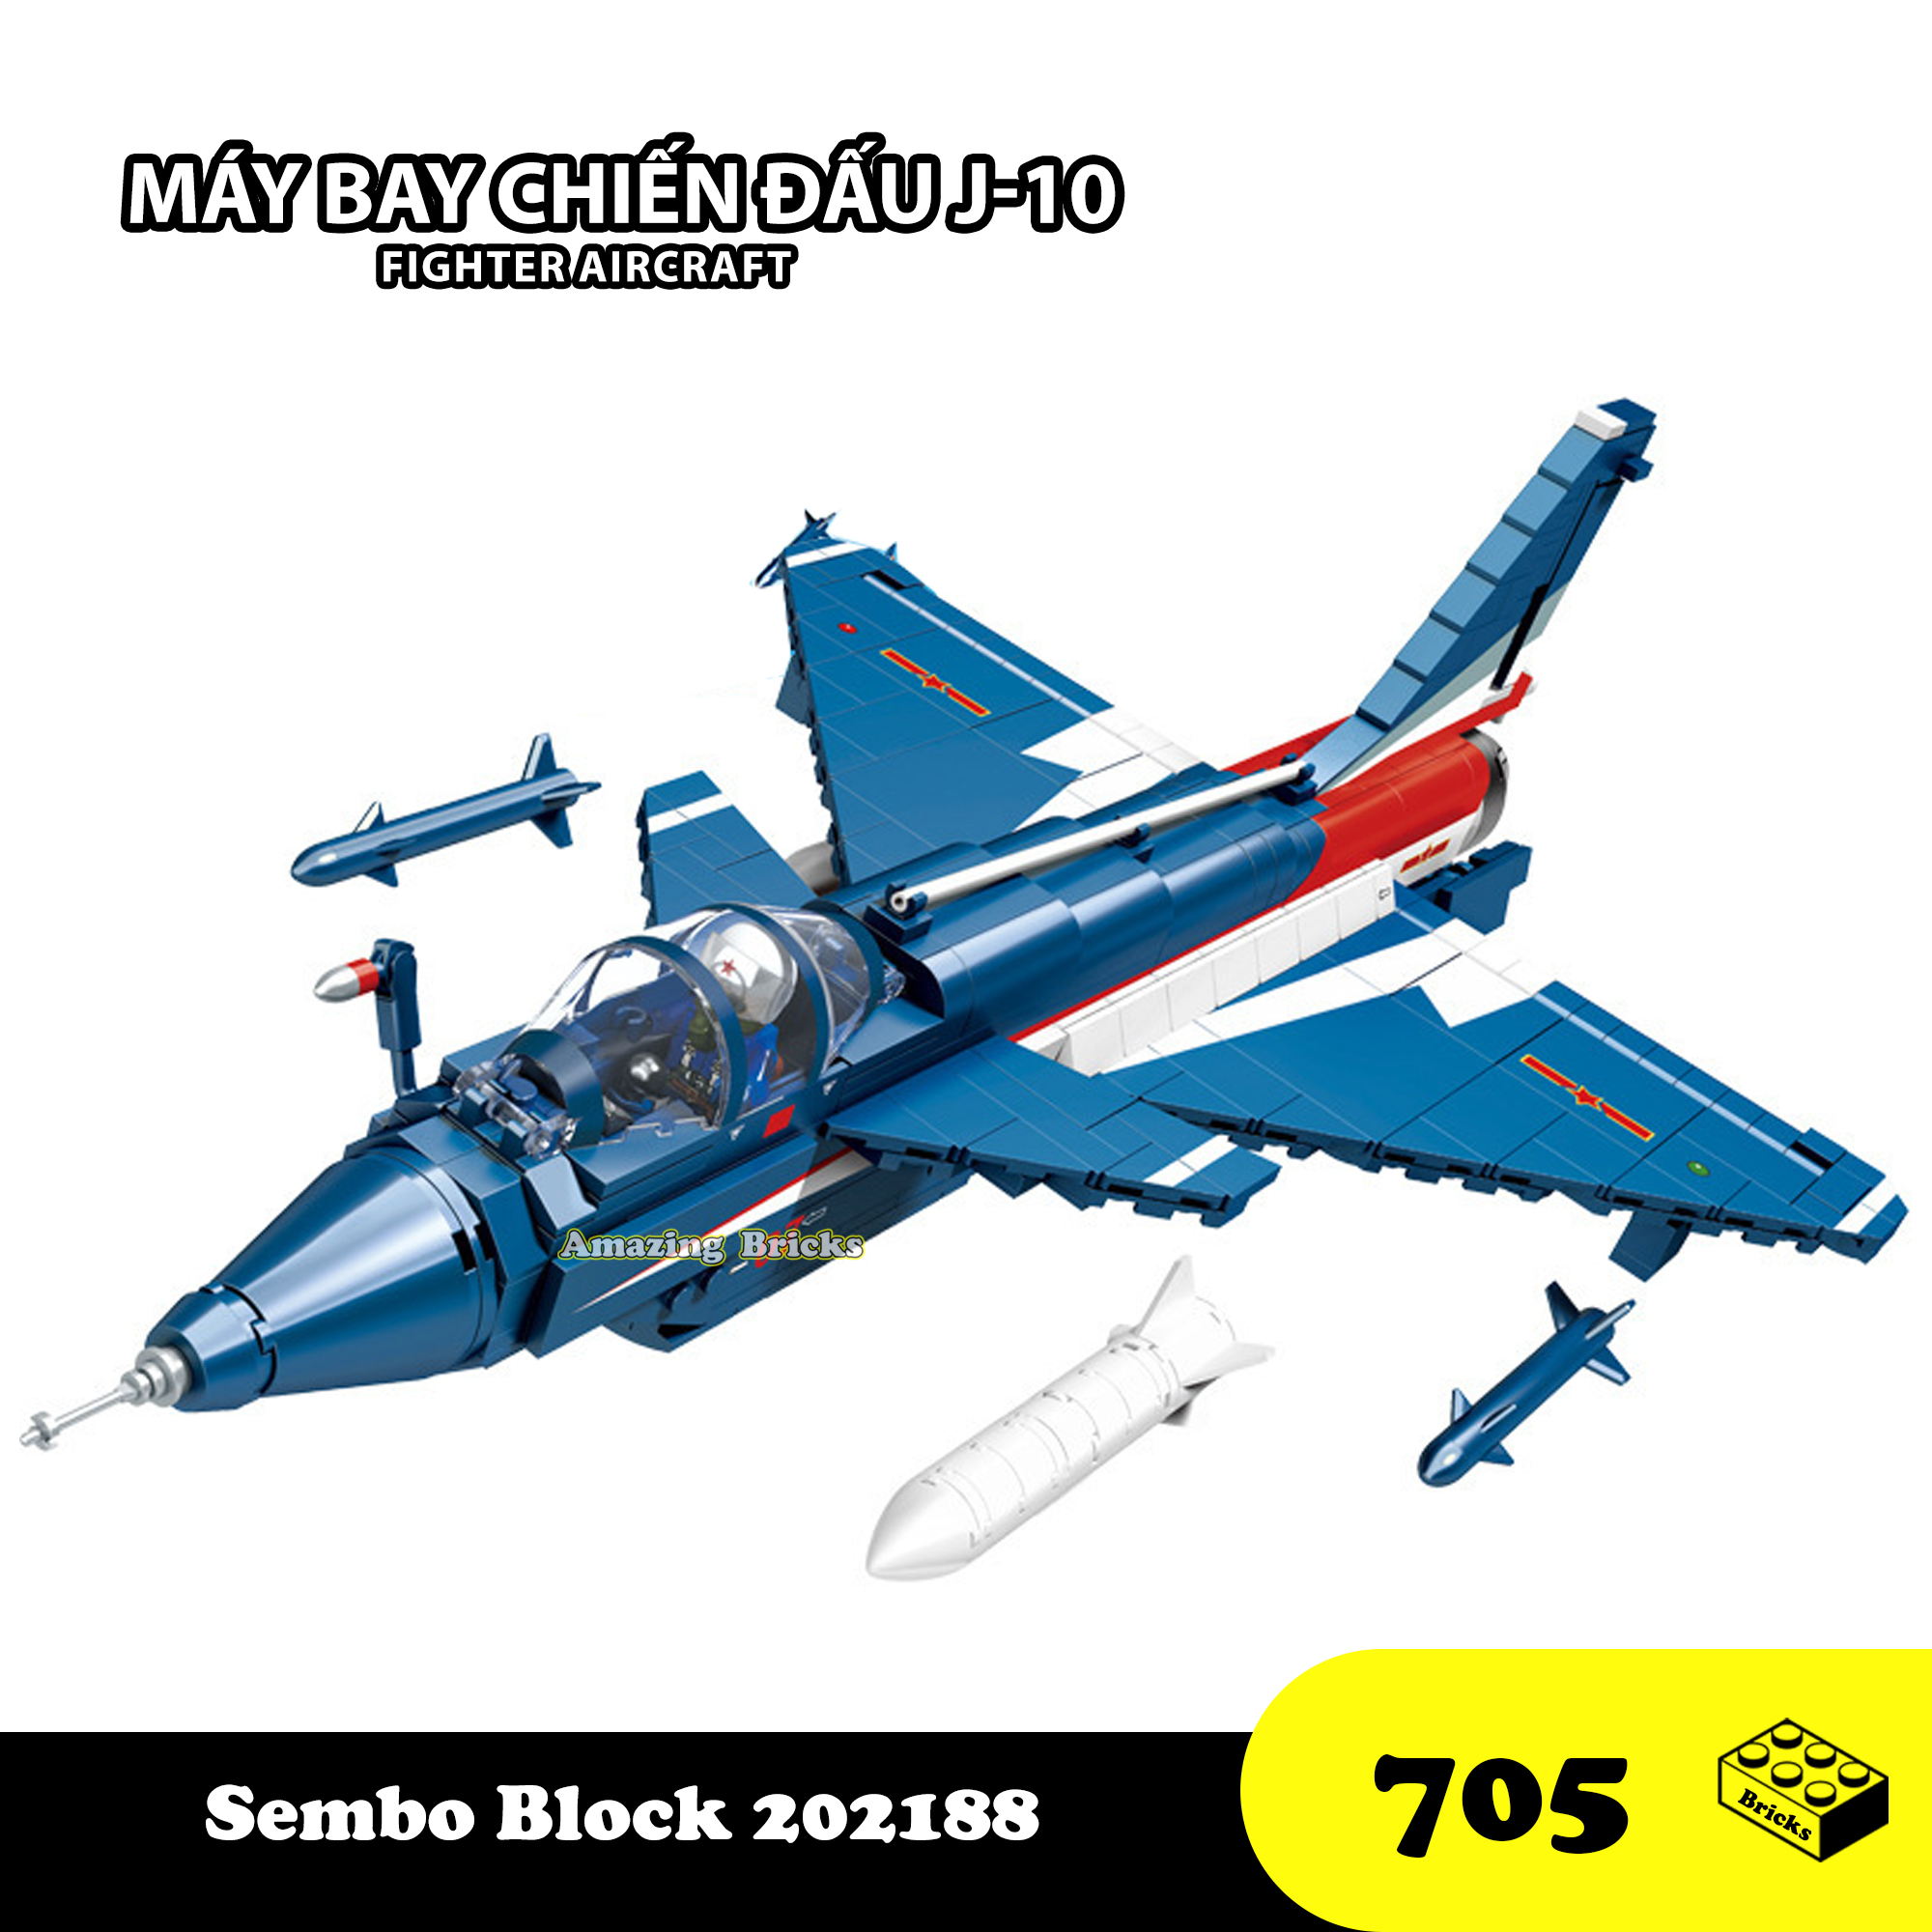 Đồ chơi Lắp ráp Máy bay chiến đấu J-10, Sembo Block 202188 Aircraft Fighter